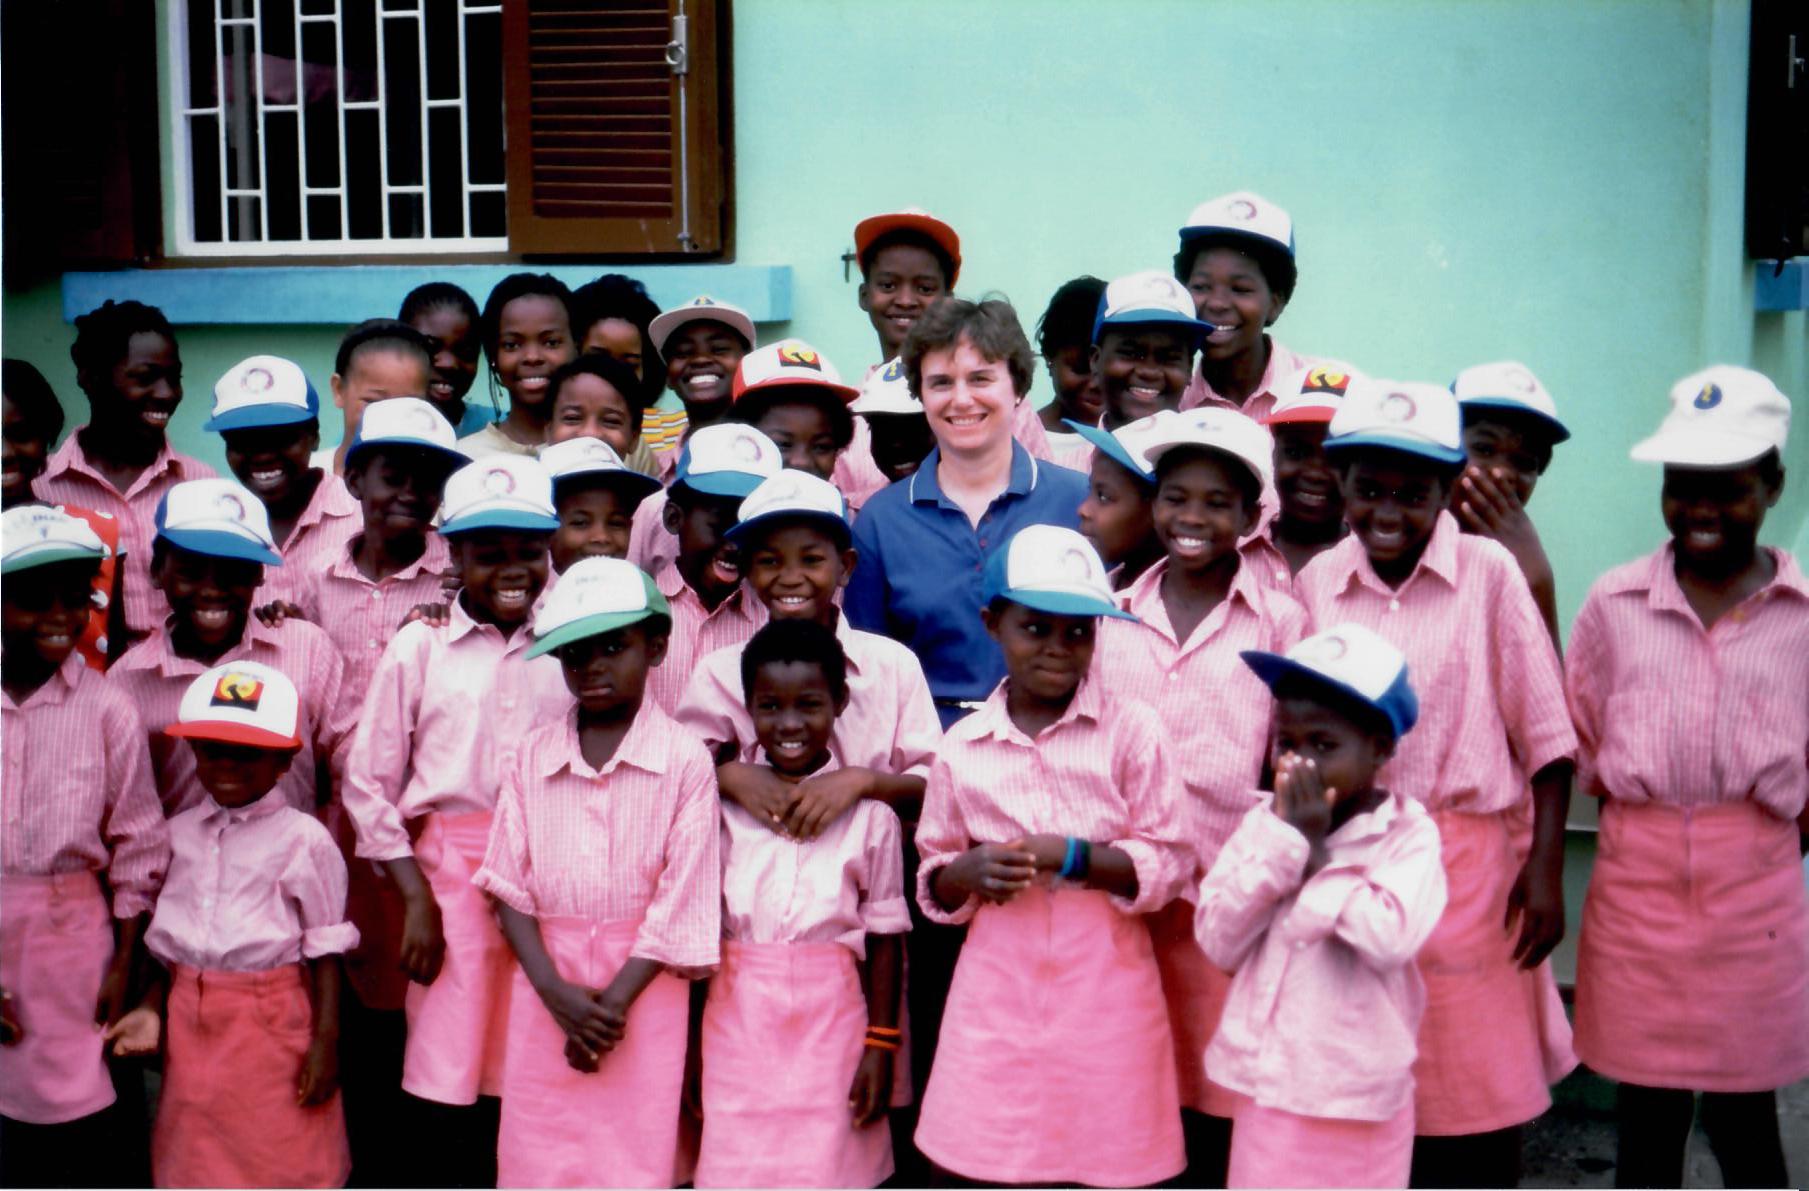  Angola Girls' School (1996) 